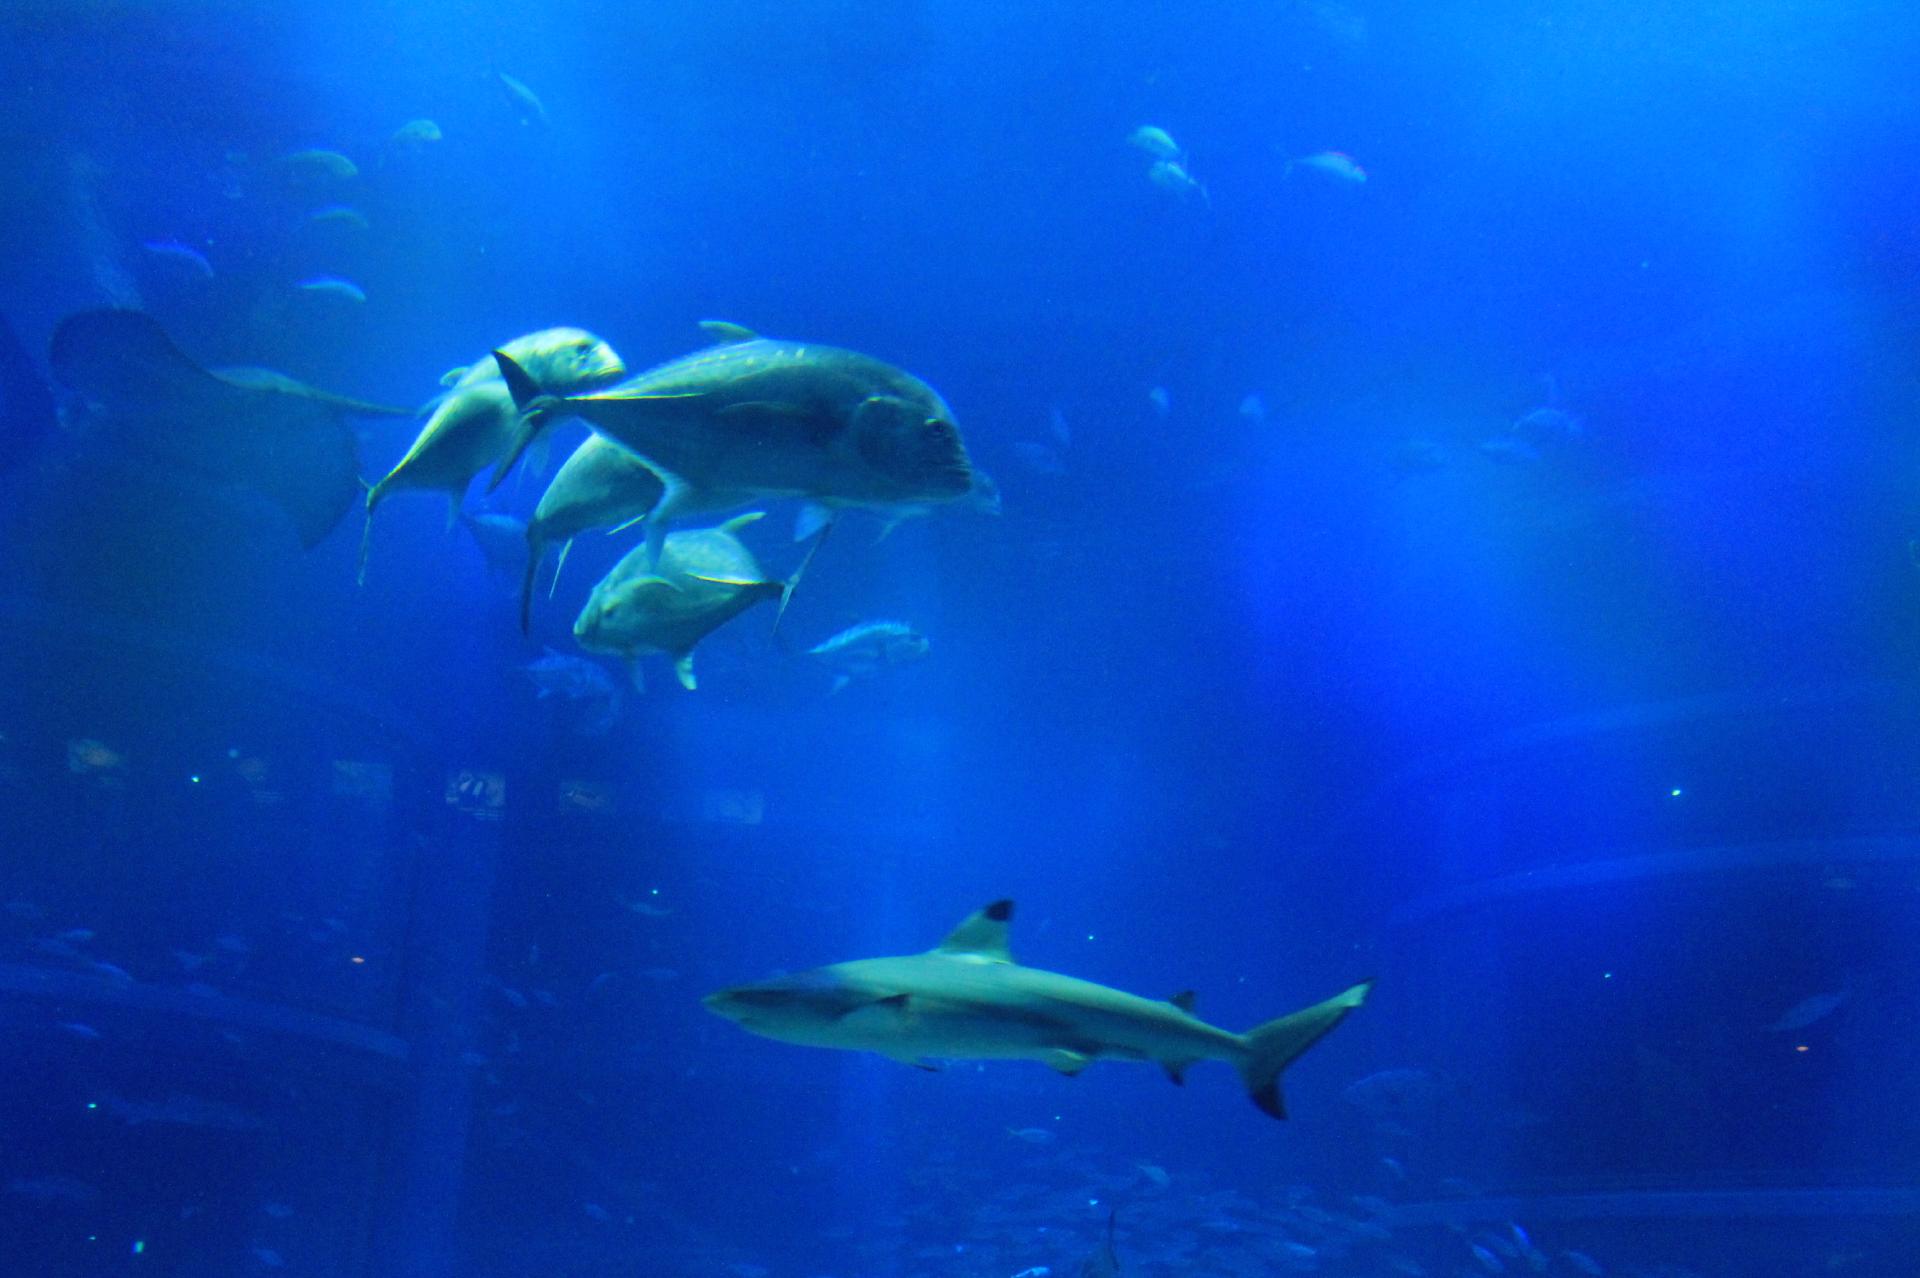 鮫 サメ の他水槽で泳ぐいろんな魚たち 無料画像 フリー写真素材 Activephotostyle